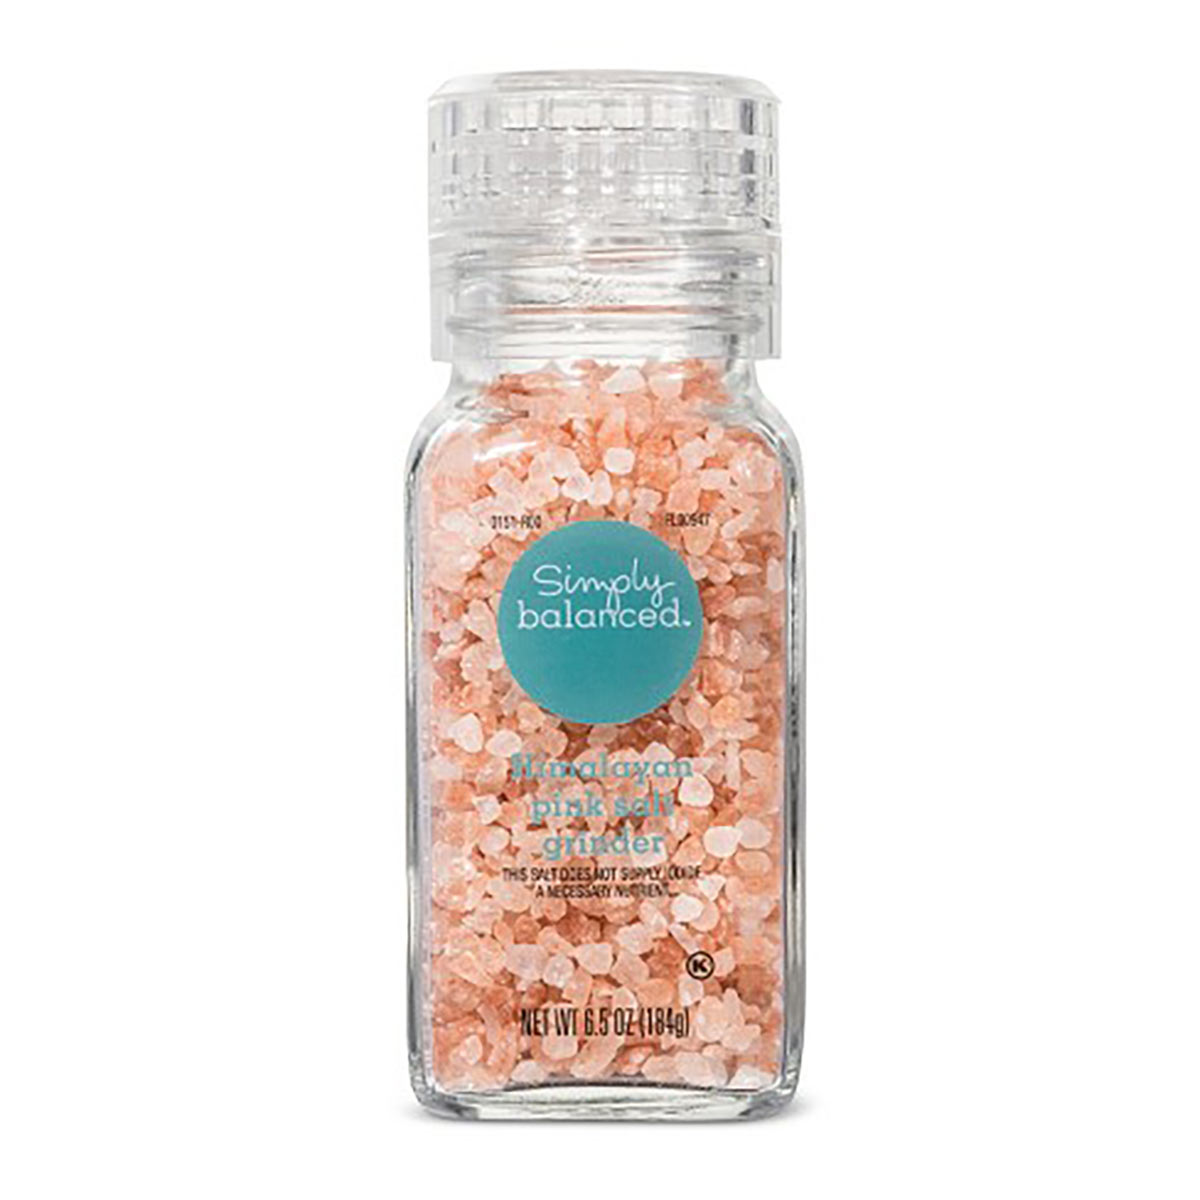 simply balanced himalayan pink sea salt